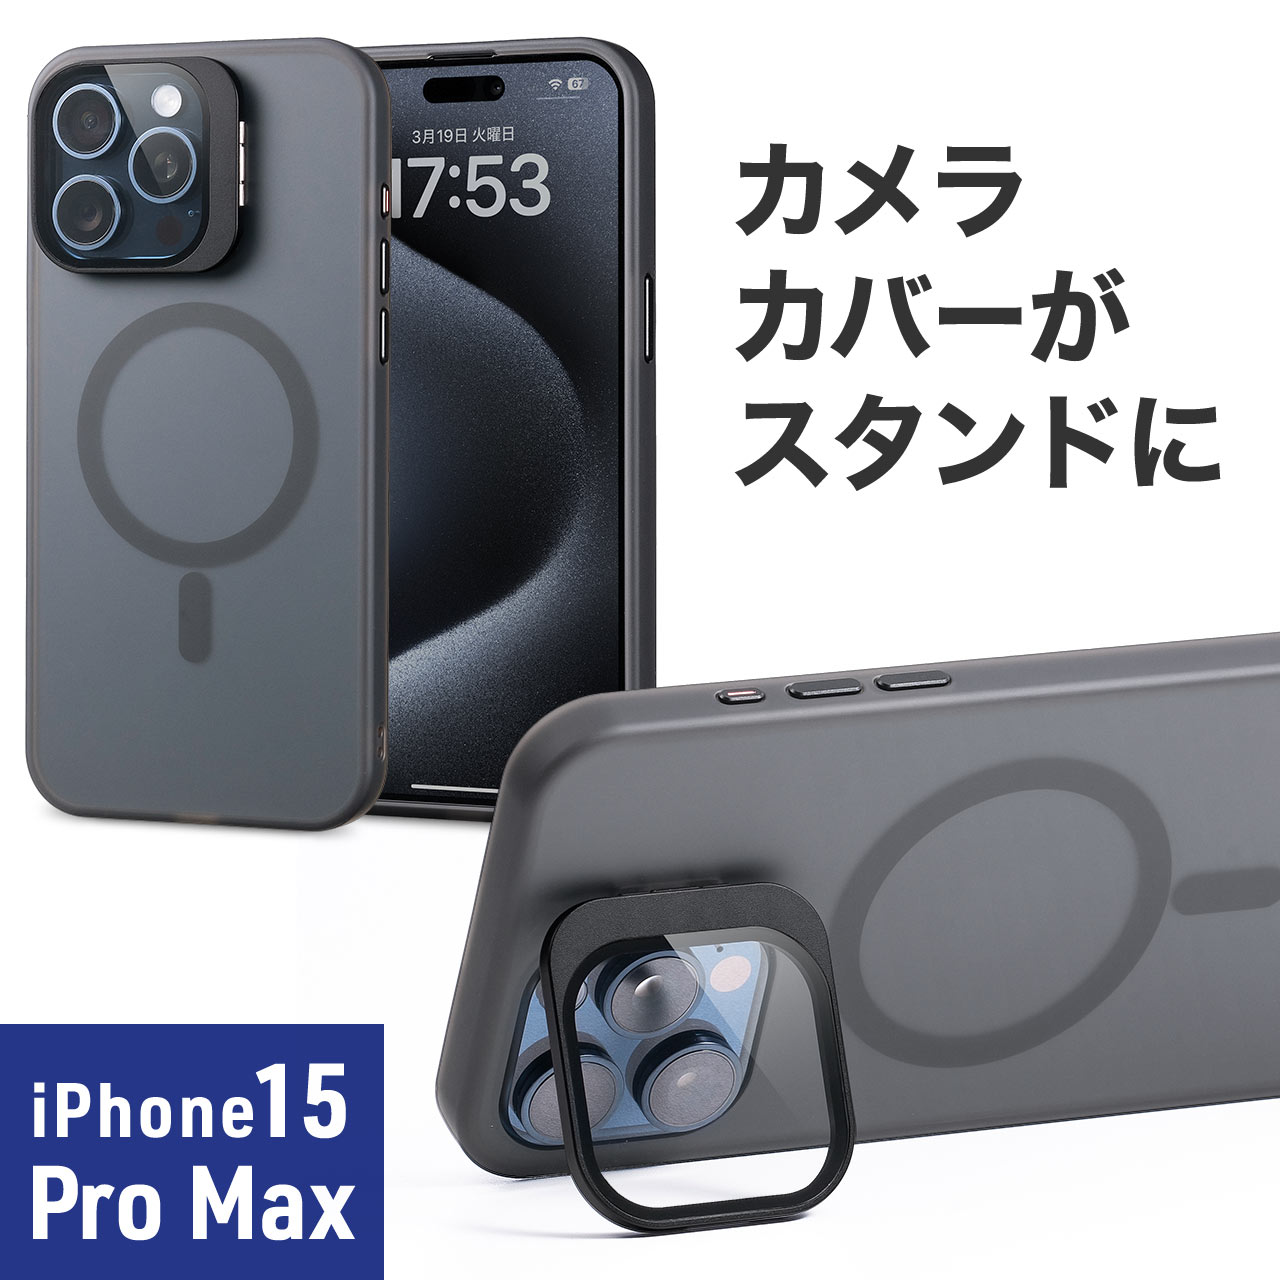 iPhone15 Pro Max 専用ソフトケース マットブラック 半透明 カメラカバー レンズカバー スタンド付き MagSafe対応  ワイヤレス充電 200-SPC037BK